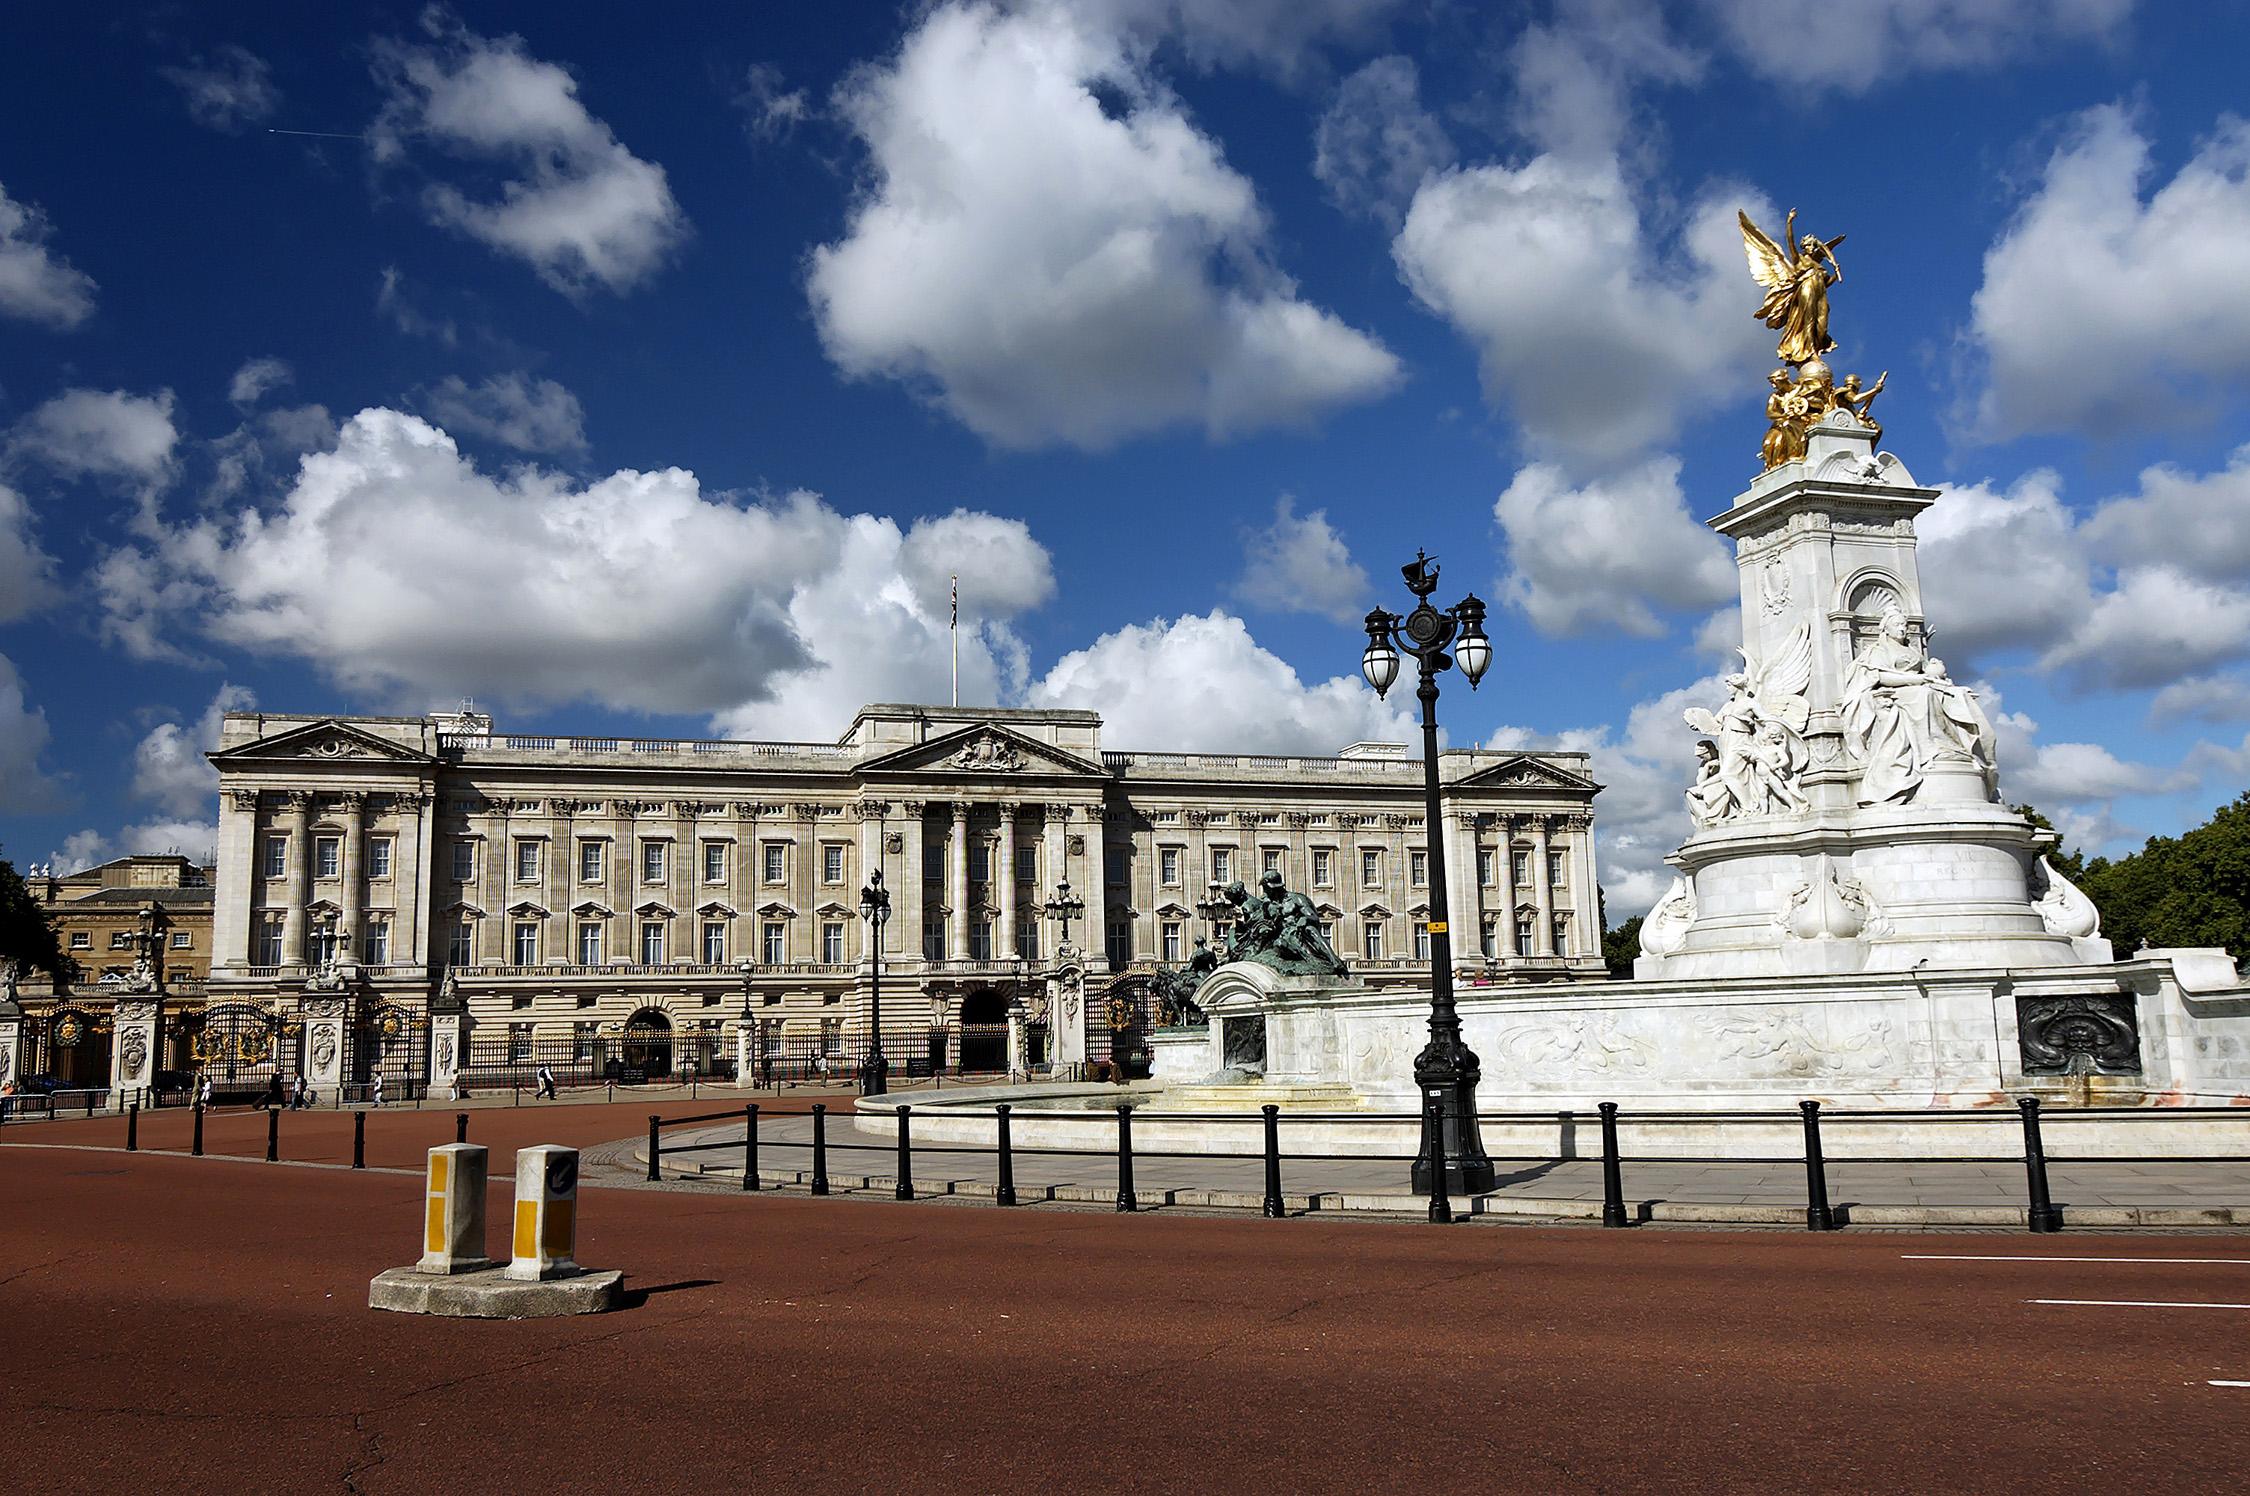 游客可以在这里参观豪华的宫殿和大客厅,享受皇家的热情款待